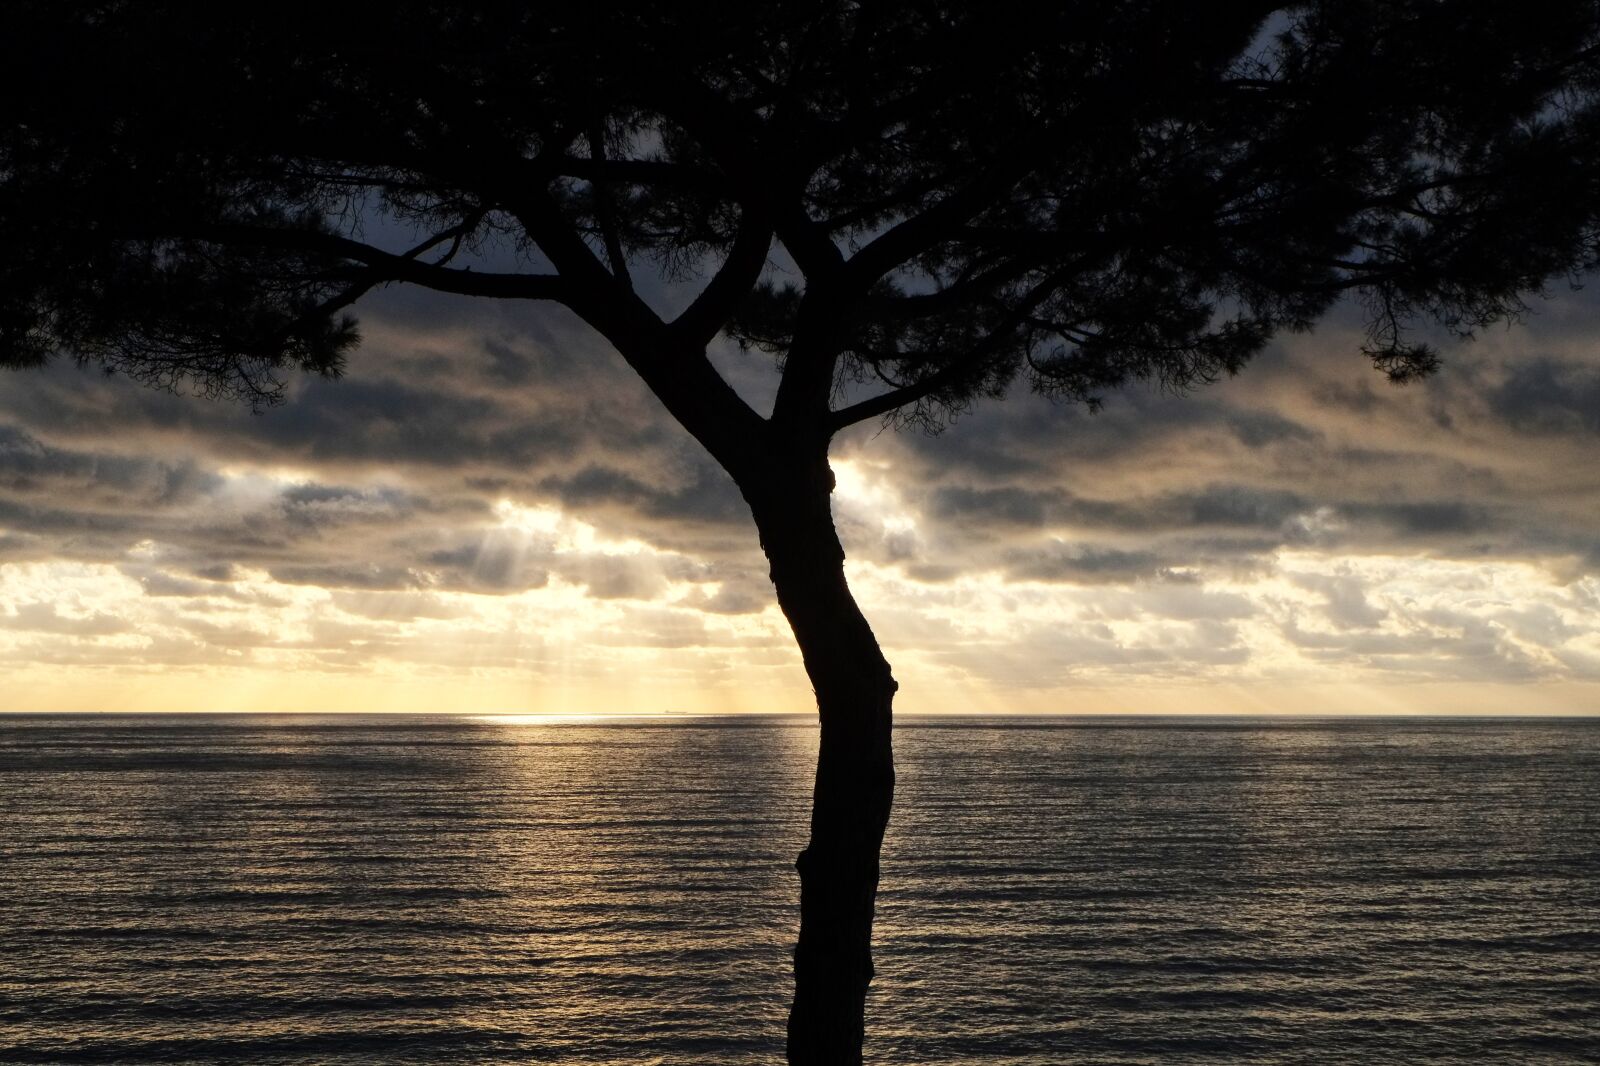 Fujifilm X-E1 sample photo. Sunset, sea, clouds photography